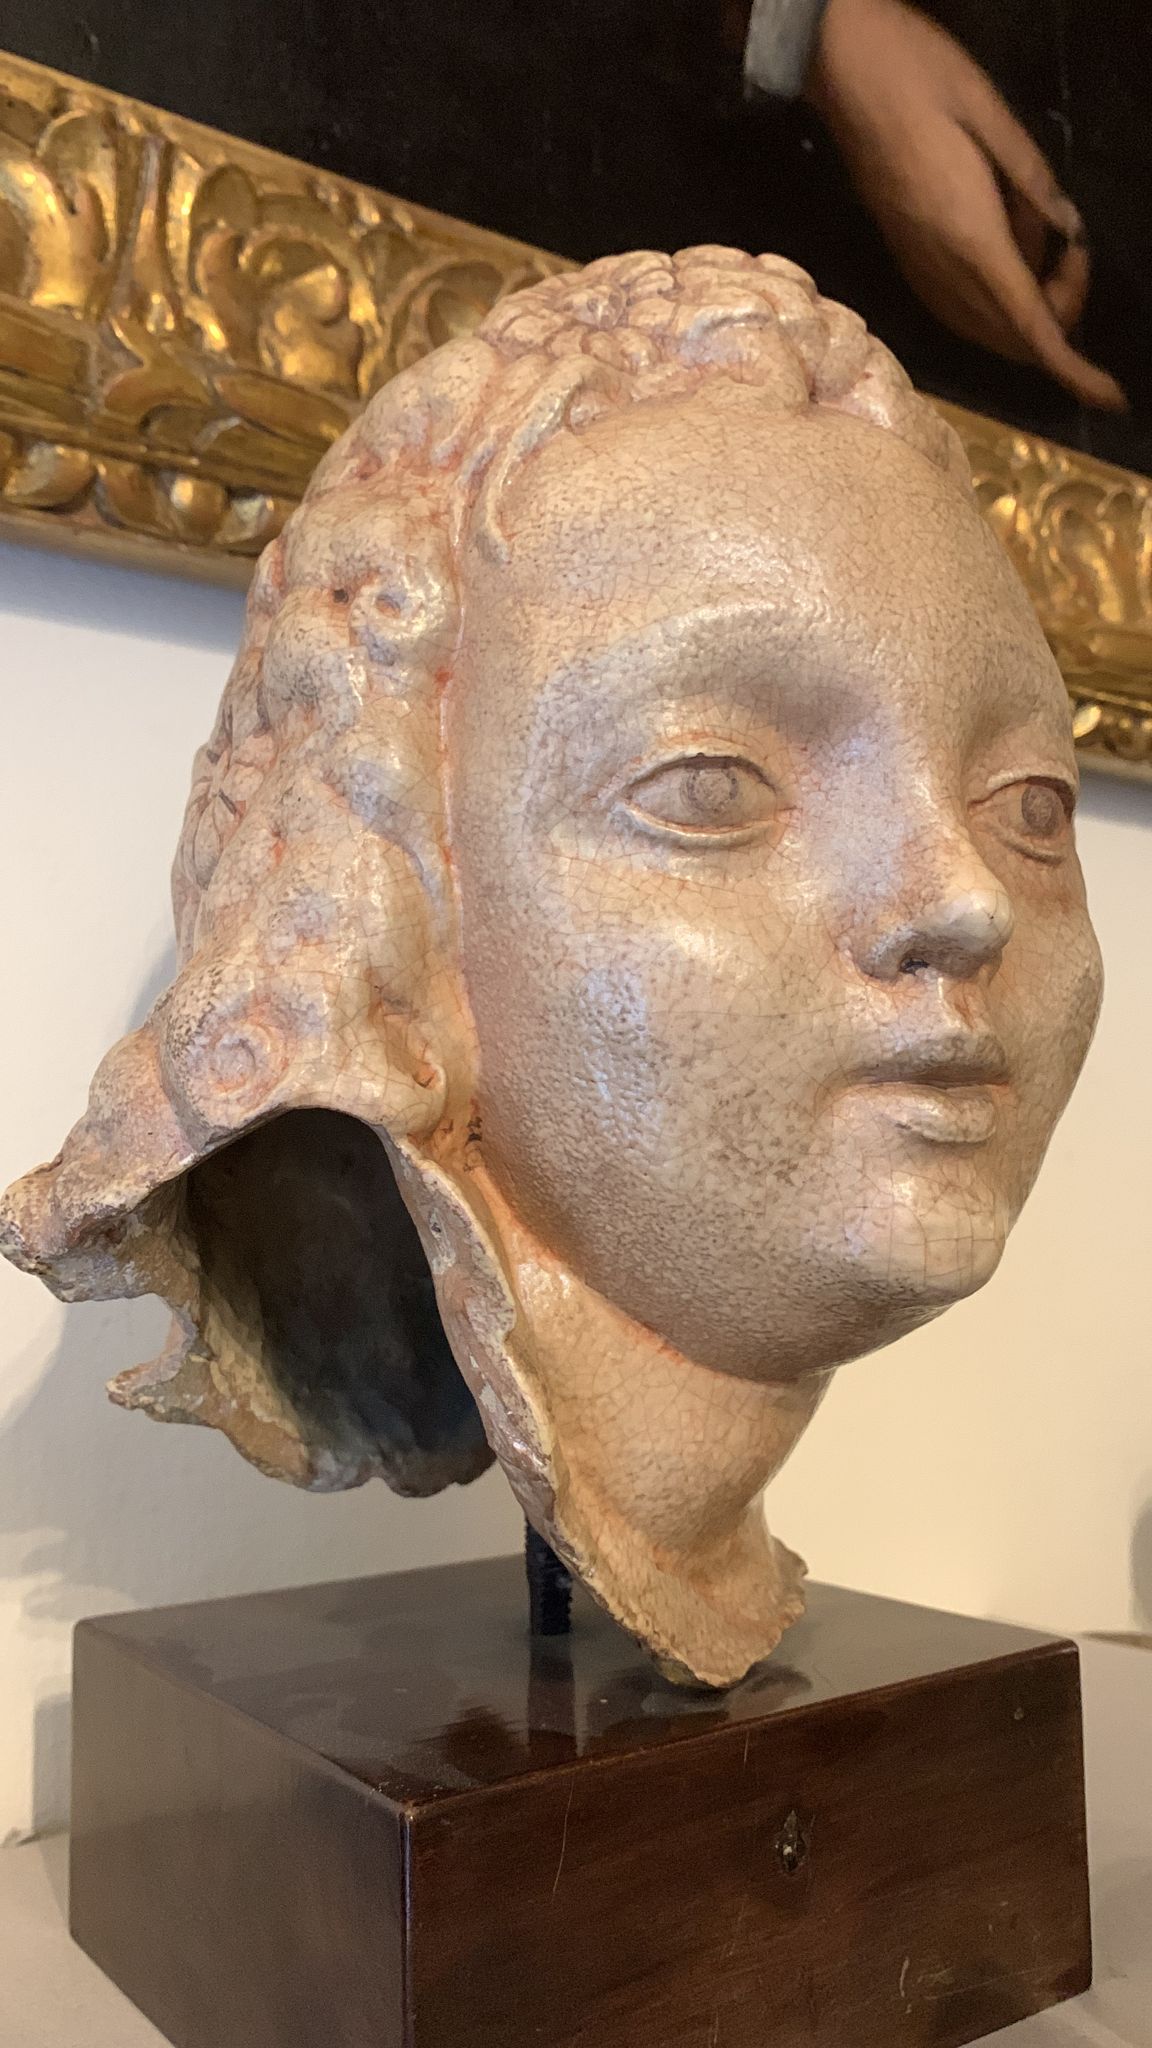 Pietro Melandri, Faenza (1885-1976). Head of a young girl.